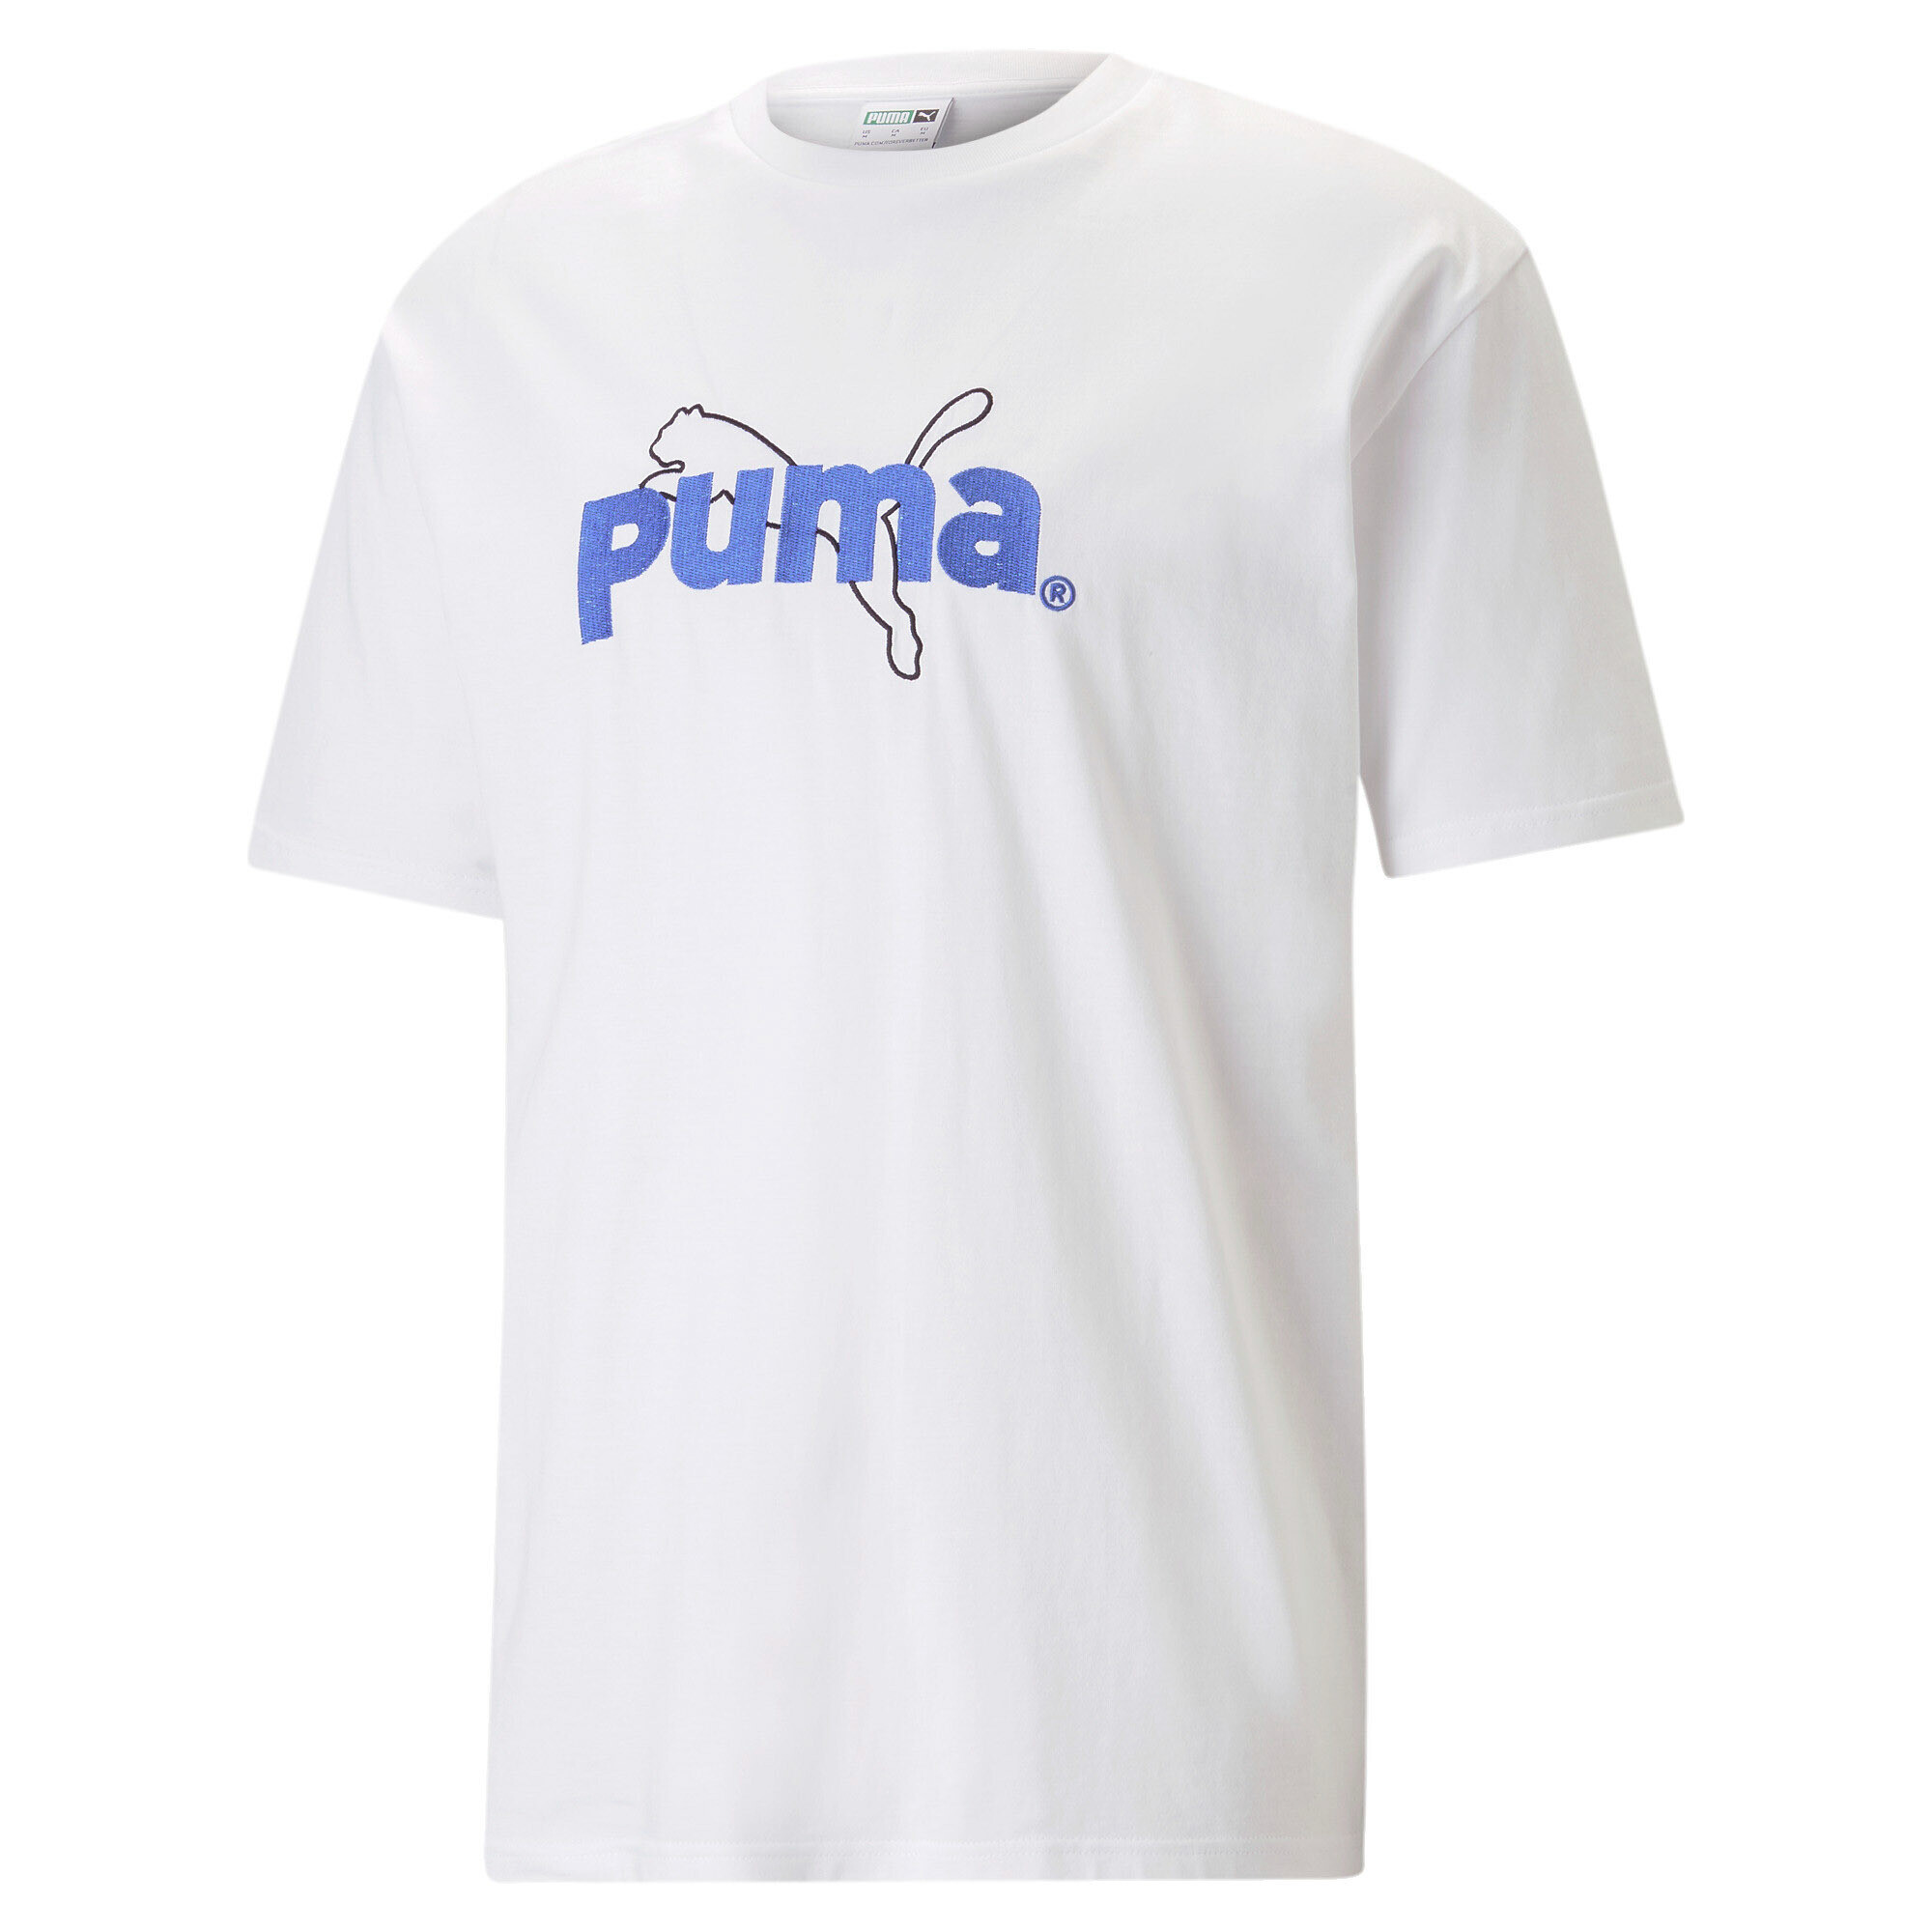 ＜プーマ公式通販＞ プーマ ユニセックス PUMA x KOCHE グラフィック 半袖 Tシャツ ユニセックス PUMA White ｜PUMA.com